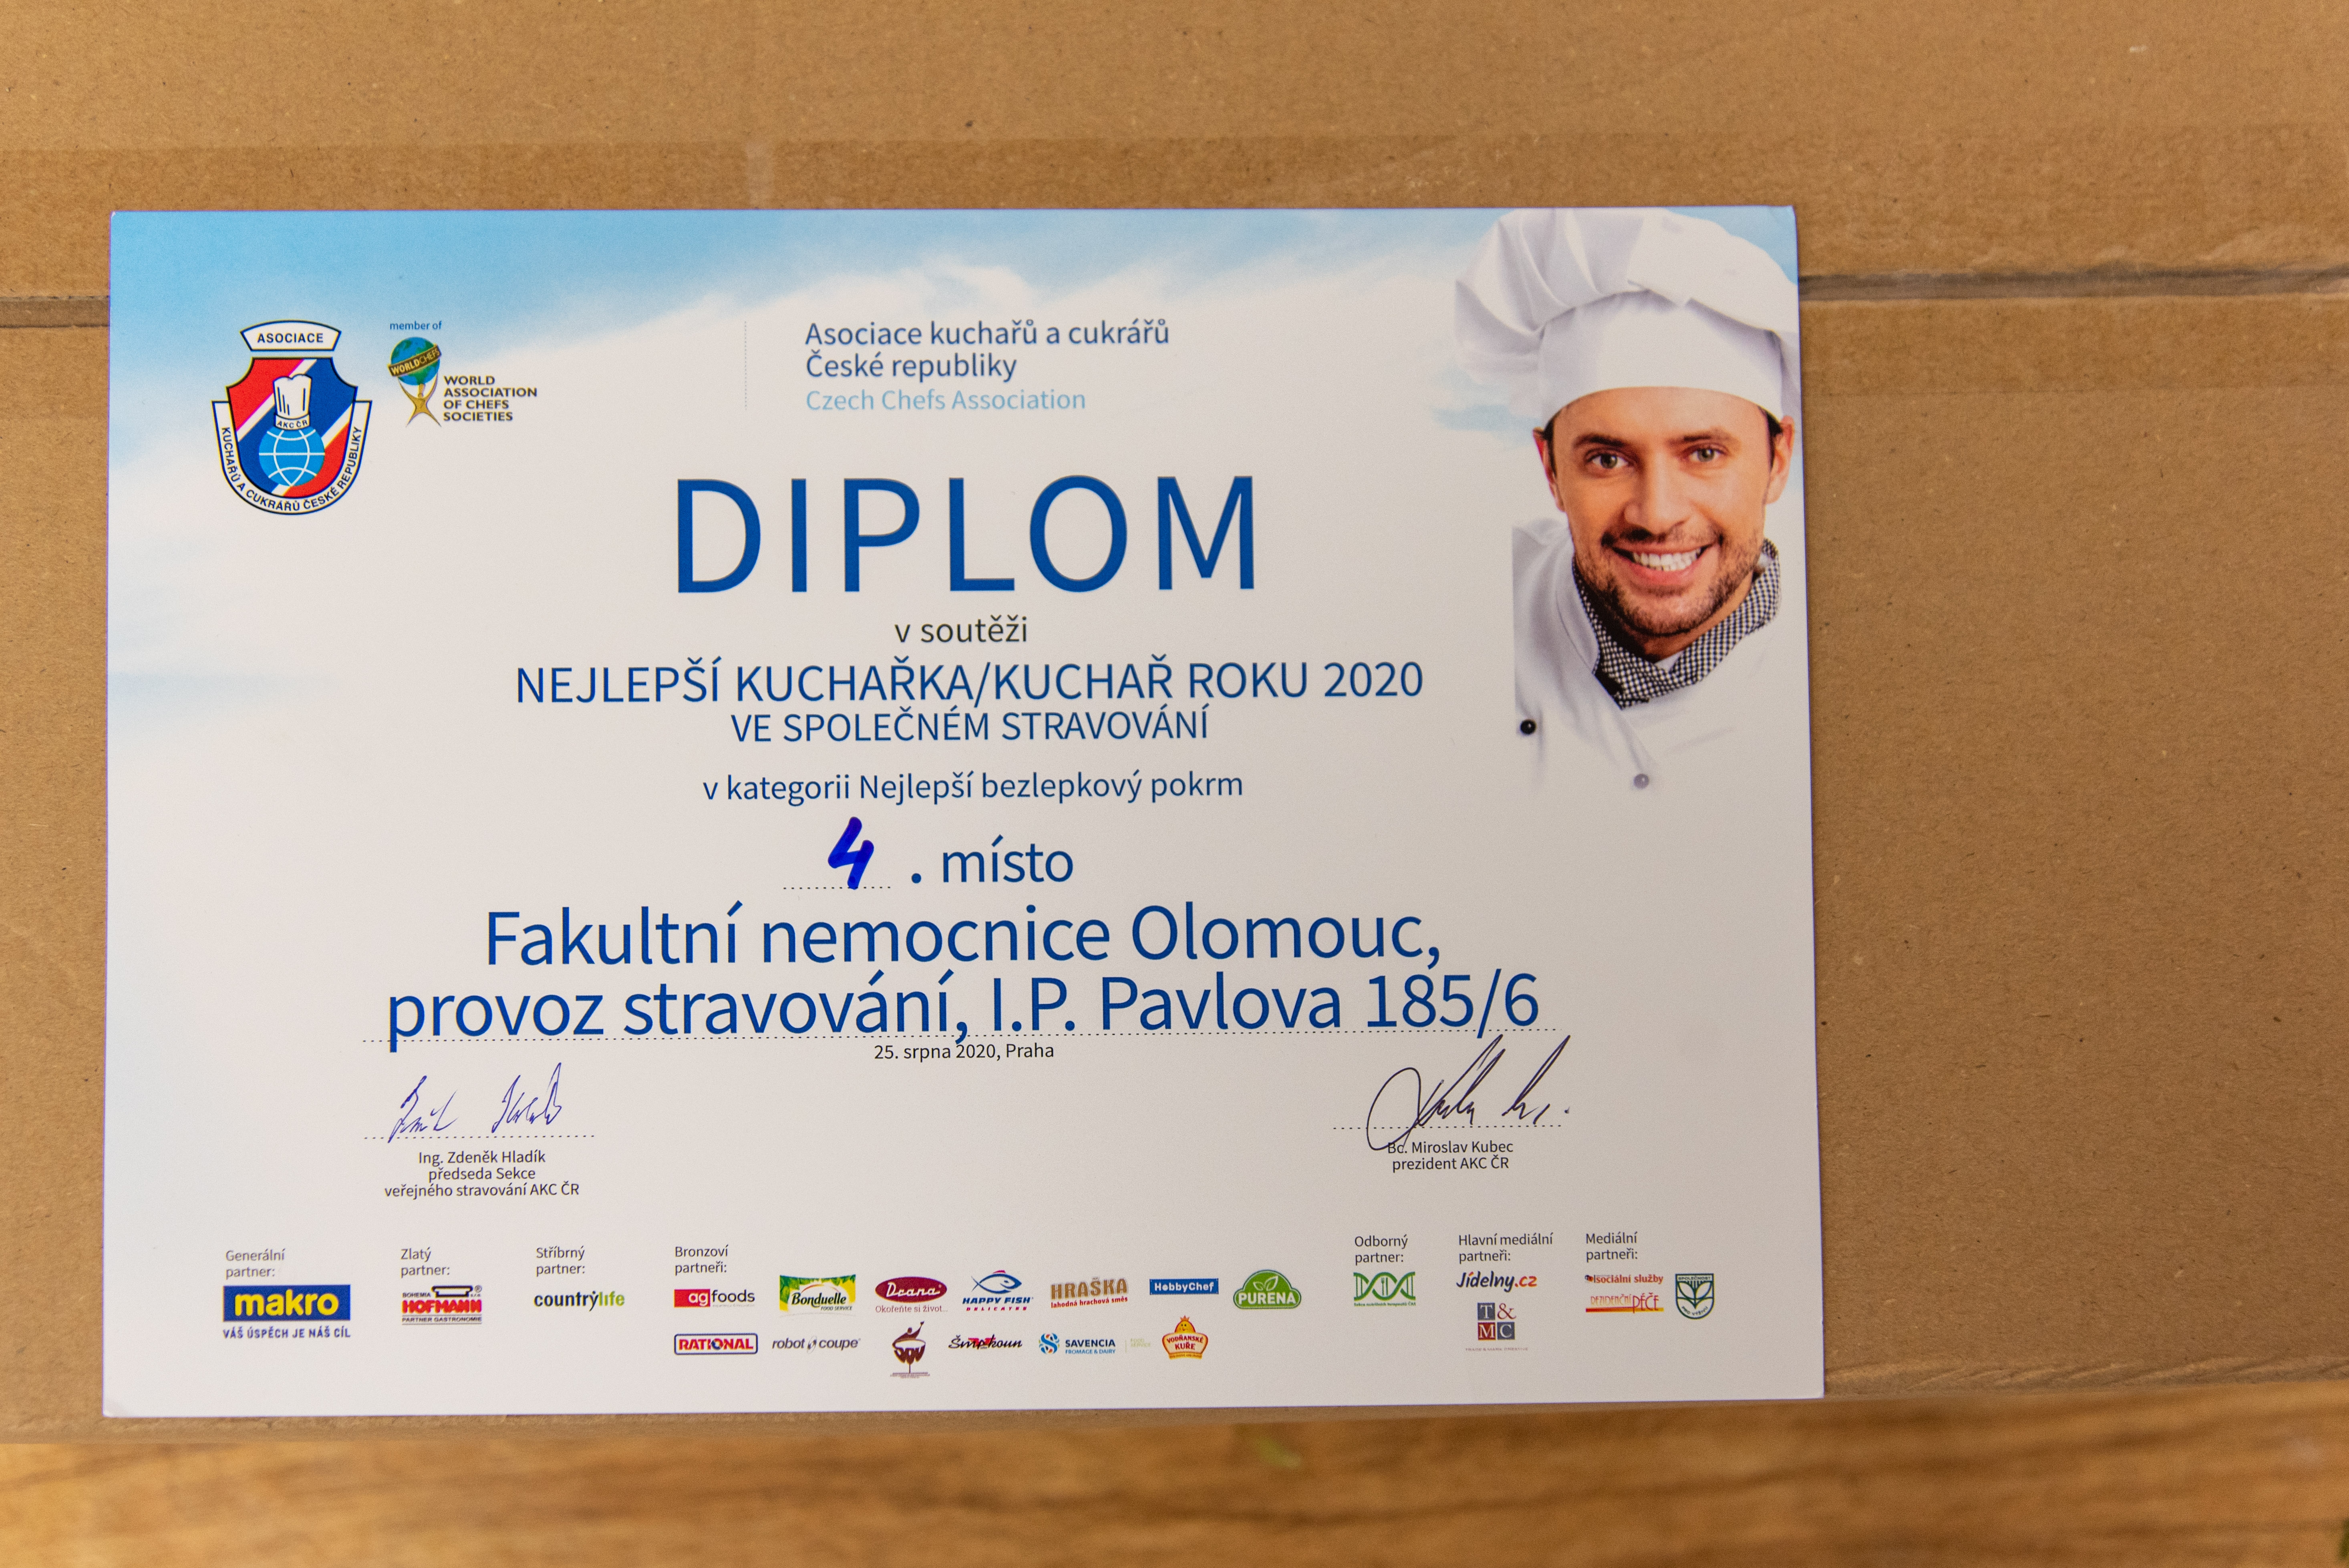 Vepřová pečeně z FN Olomouc patří mezi nejlepší jídla společného stravování v České republice zdroj foto:FNOL